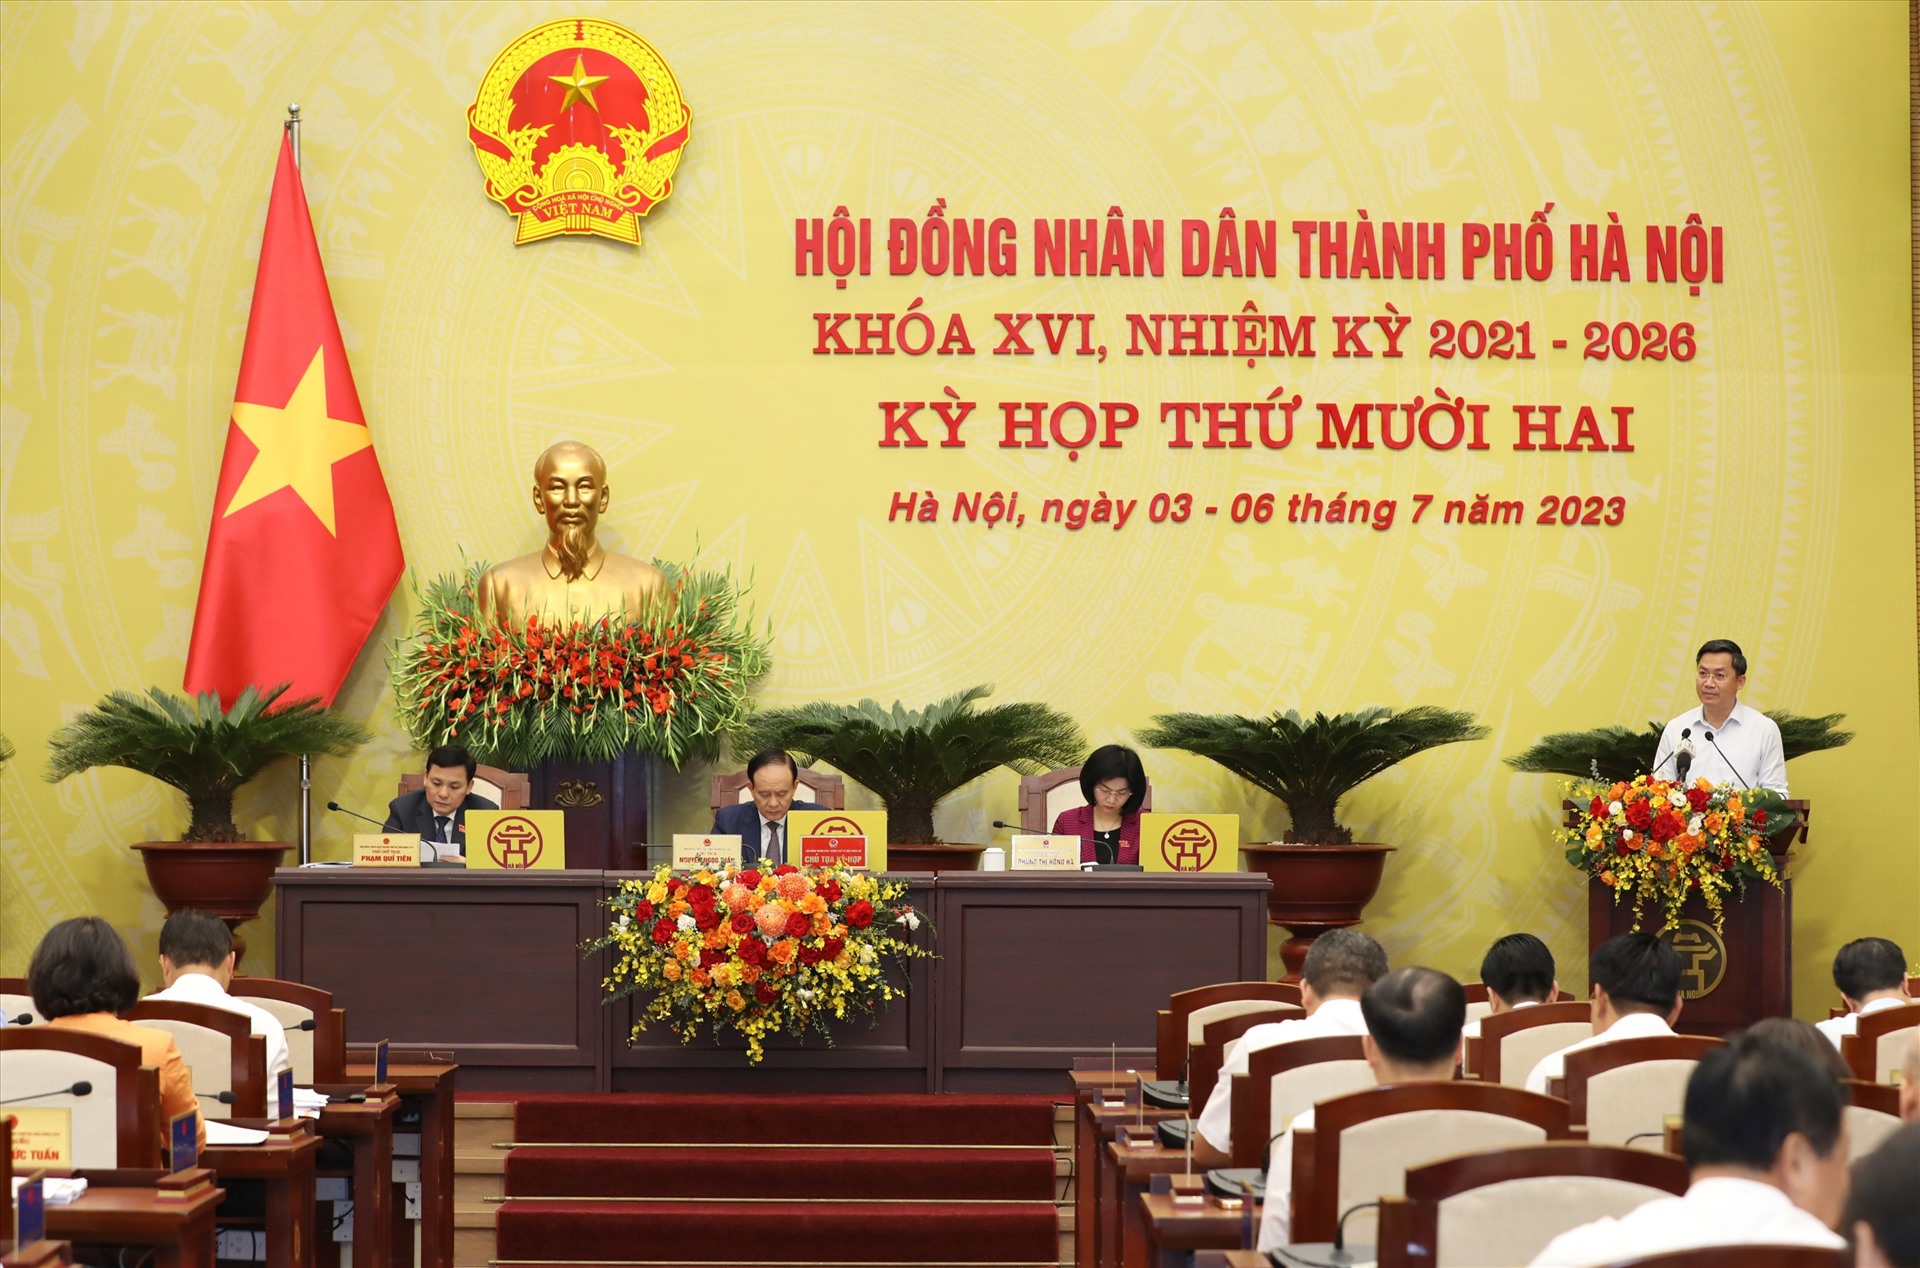 Phó Chủ tịch UBND TP Hà Minh Hải giải trình làm rõ các vấn đề đại biểu HĐND TP quan tâm. Ảnh: HĐND